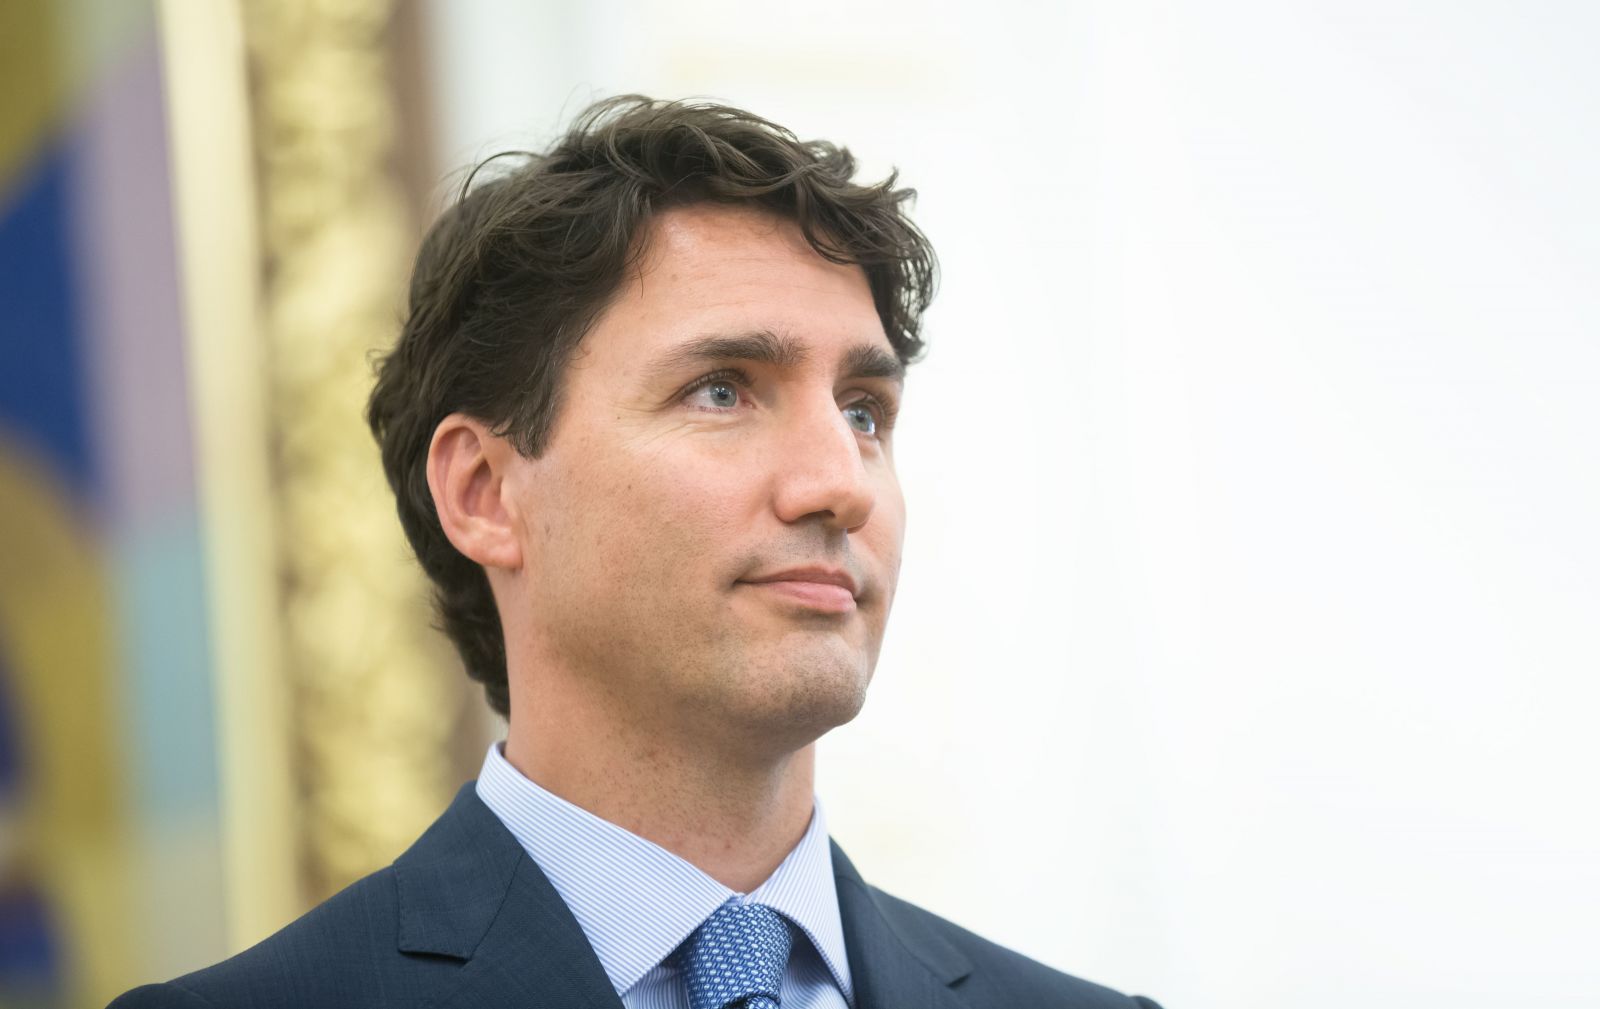 Las travesuras de Justin Trudeau ¿Quién acusa?